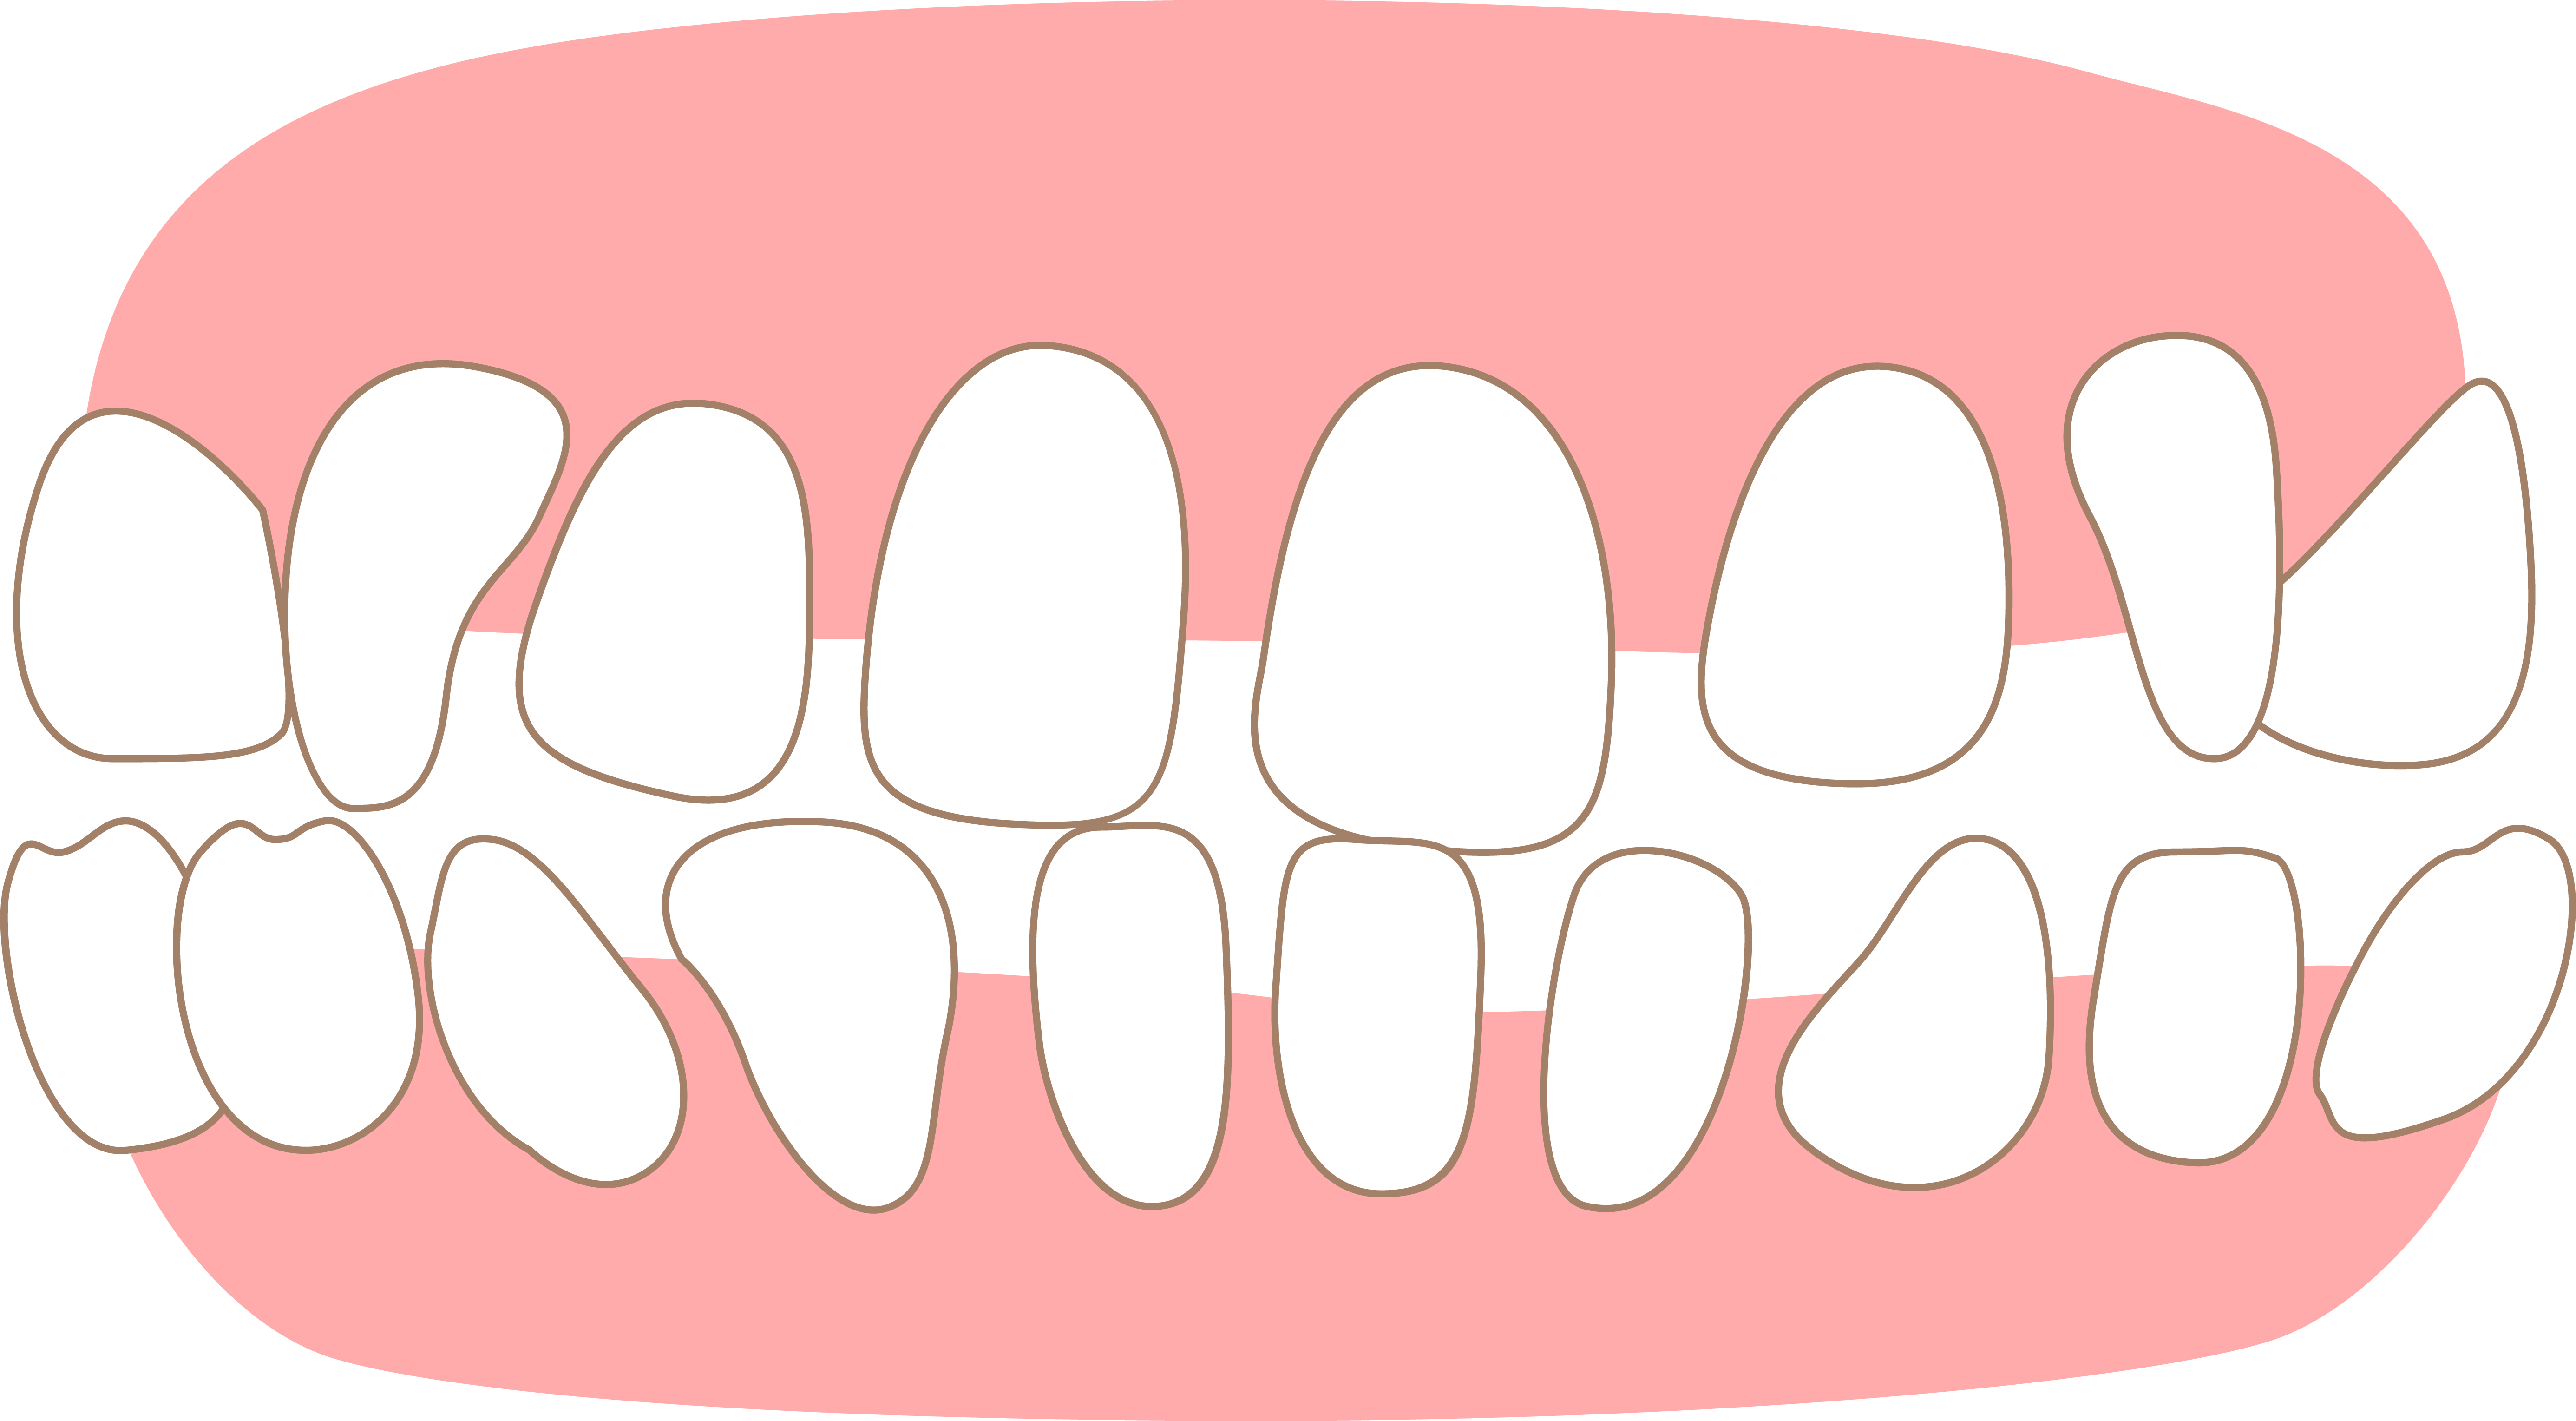 すきっ歯(空隙歯列)